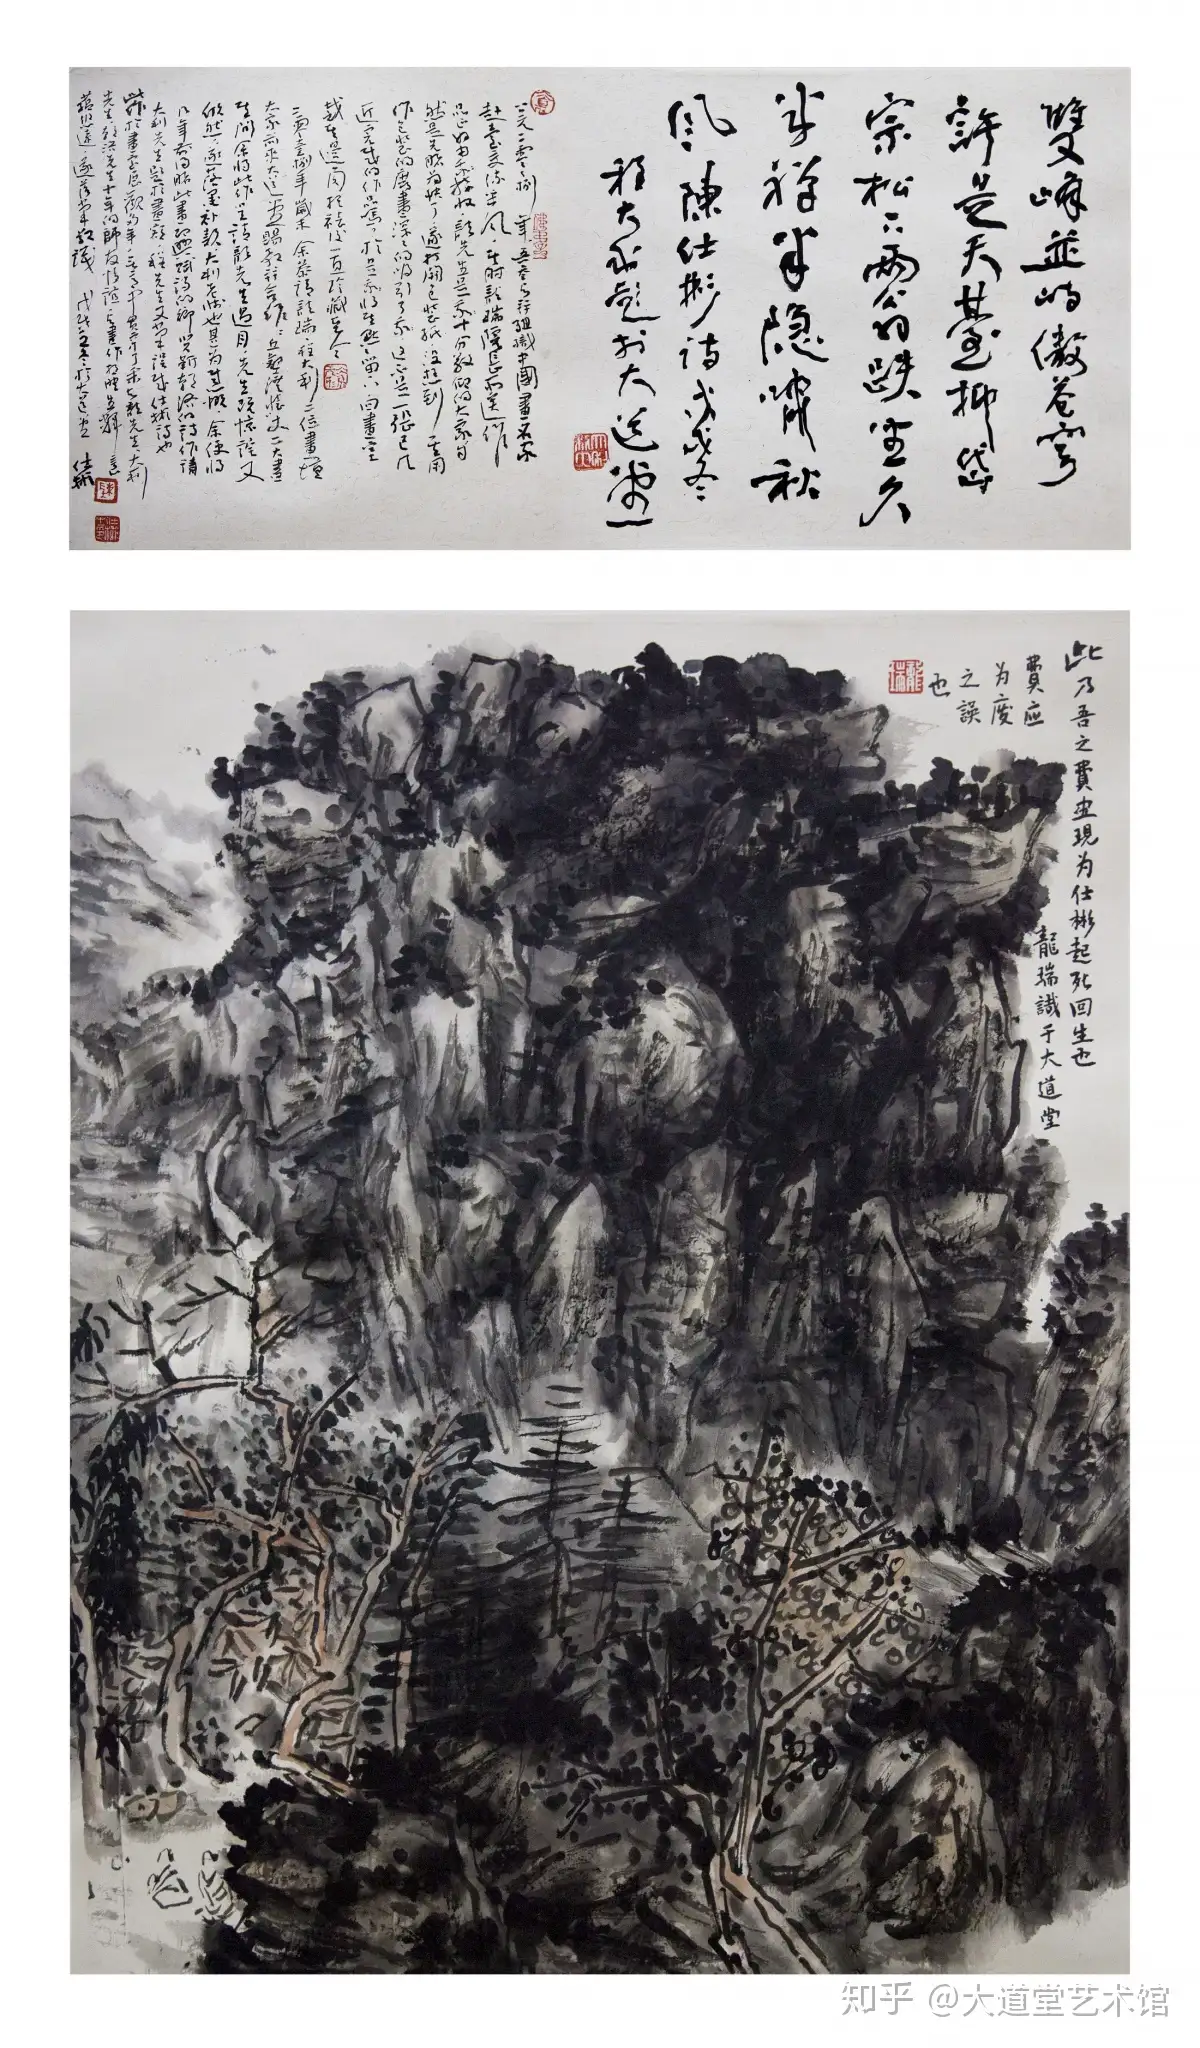 【強い雪】片岡 球子、「滝のみえる富士」、希少、高級額装・画集画、状態良好、年代物、レア、1972年発行、かたおか たまこ、送料無料 、ami5 自然、風景画